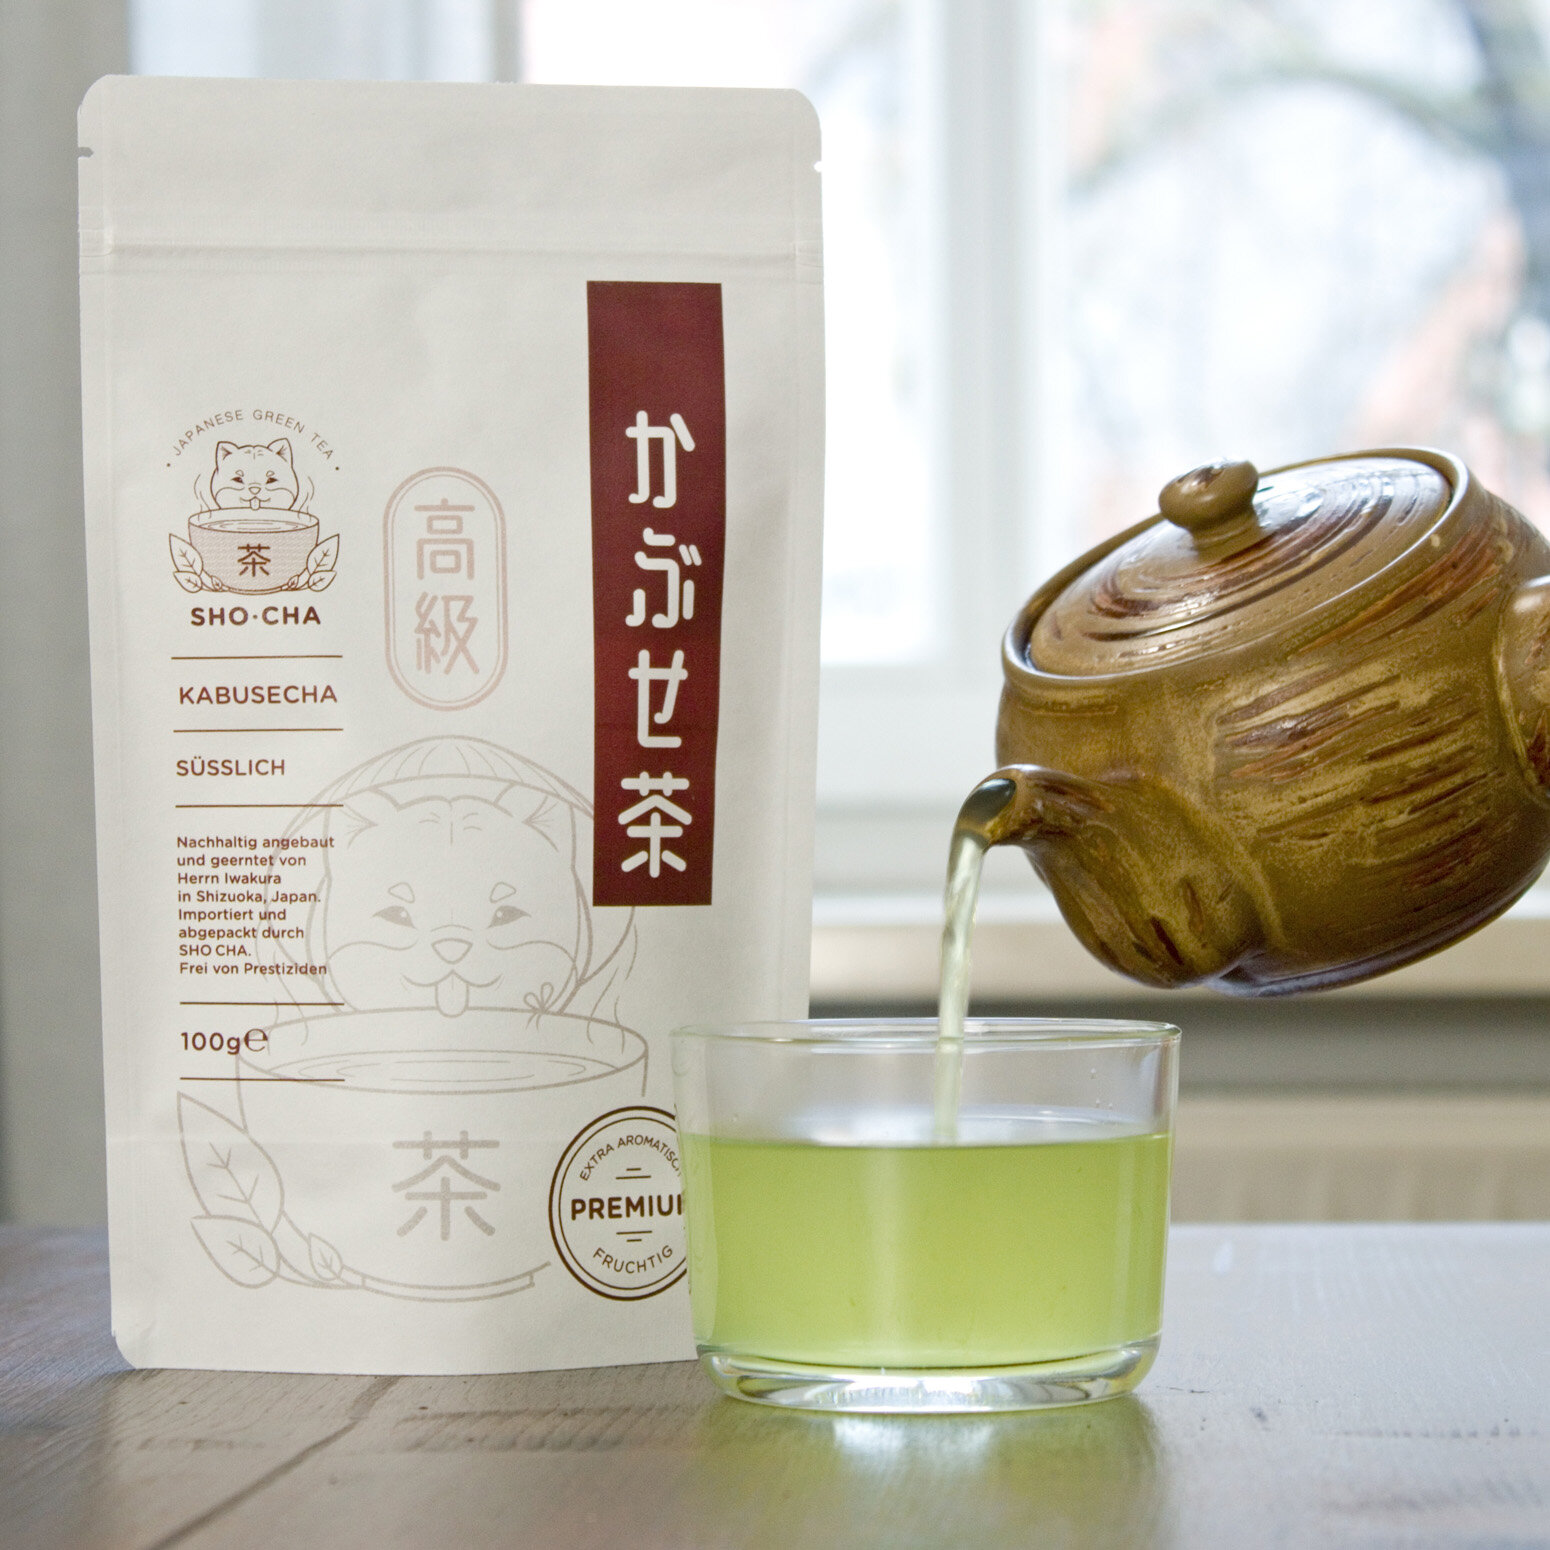 SHO CHA Wholesale Green Tea Japan.jpg